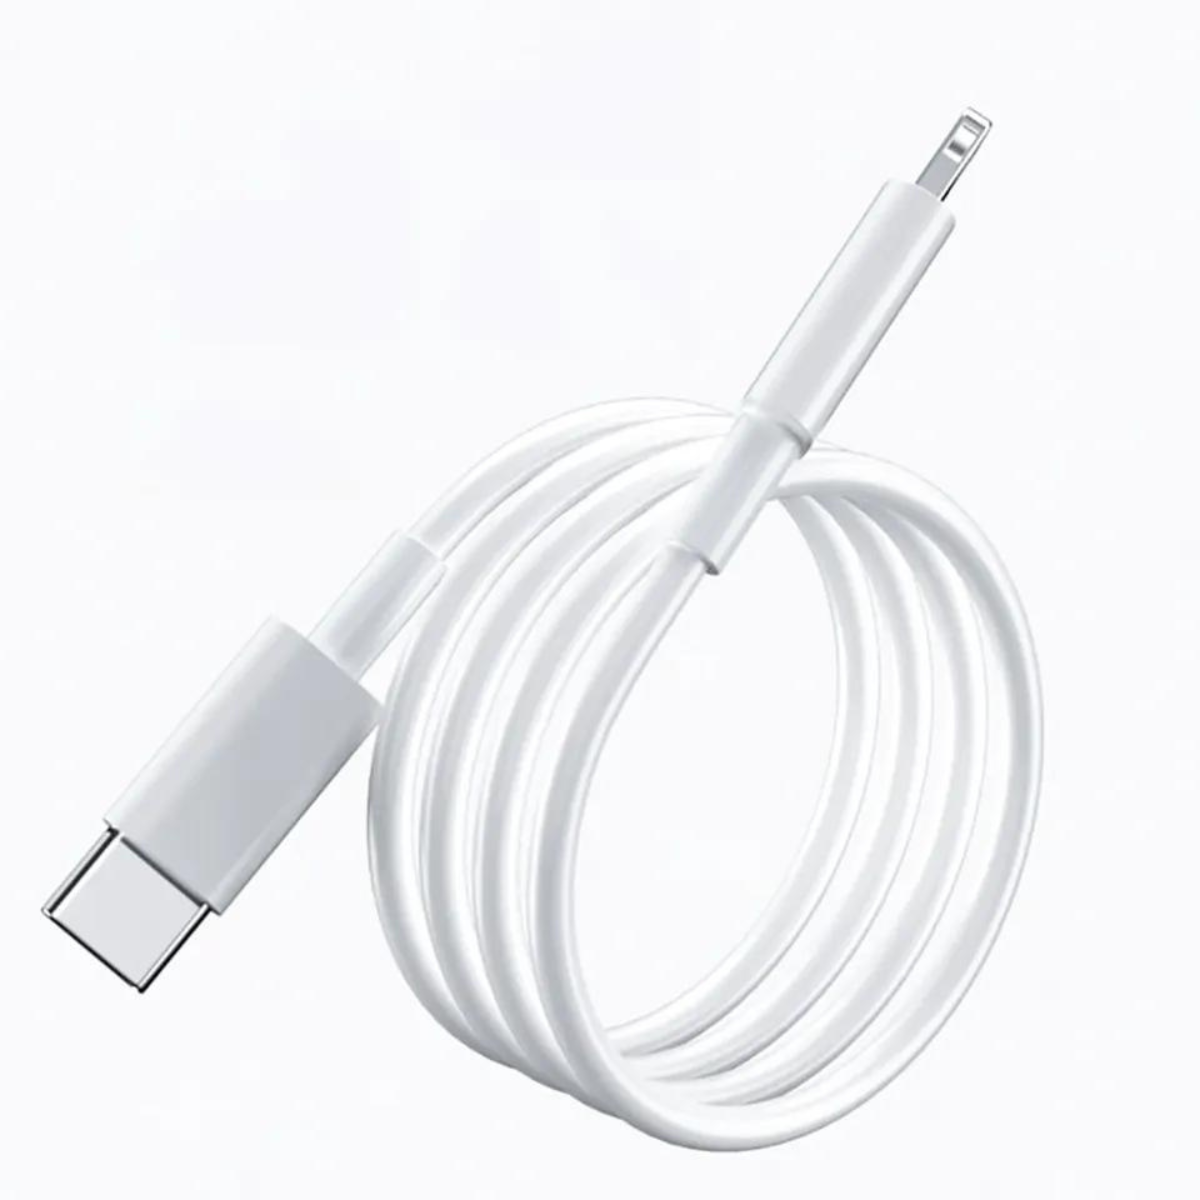 TRMK Netzteil 20W USB Ladekabel Ladegerät Apple, XR, + weiß C 12, Ladekabel Apple 1m XS 14, 11, 13, für iPhone für Apple